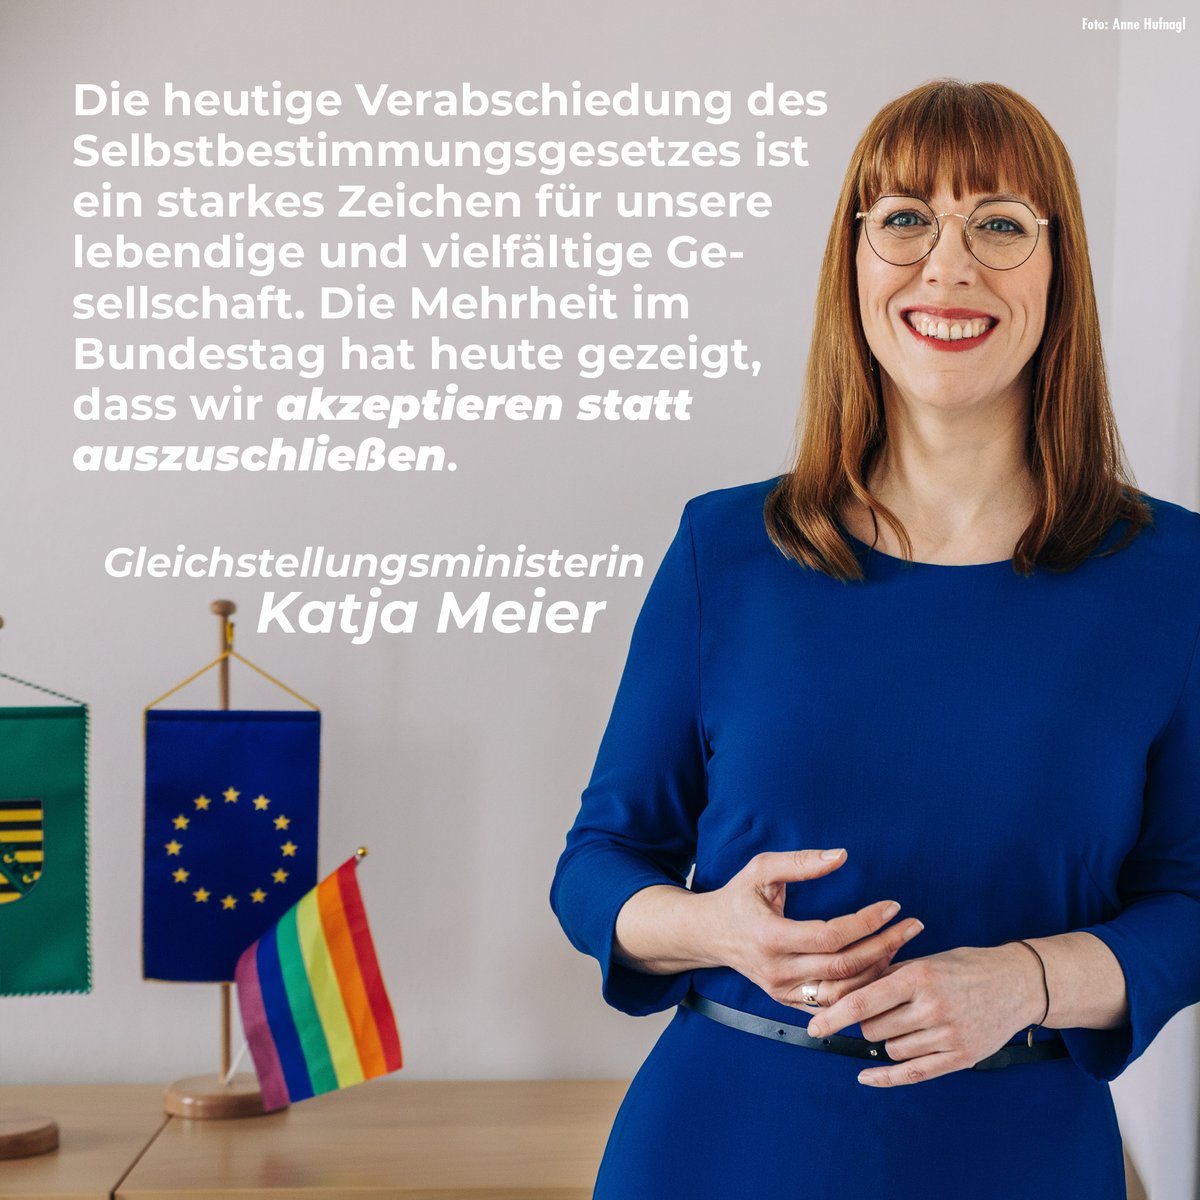 #Sachsen|s Gleichstellungsministerin Katja Meier zum heute im #Bundestag verabschiedeten #Selbstbestimmungsgesetz: medienservice.sachsen.de/medien/news/10…